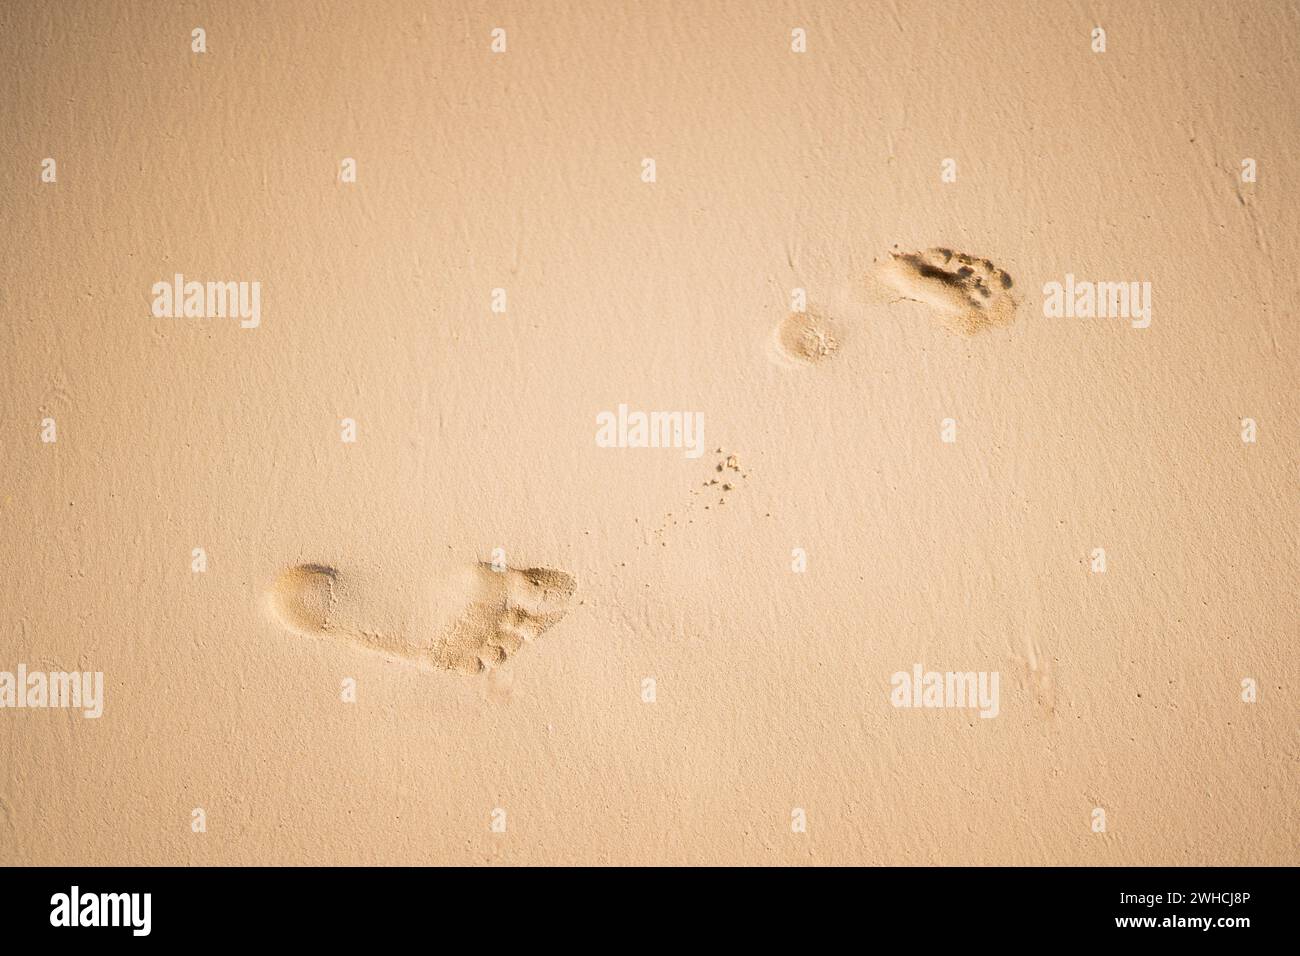 Un unico paio di impronte lascia un segno sulla sabbia liscia e incontaminata, suggerendo un momento di solitudine e riflessione in riva al mare. Foto Stock